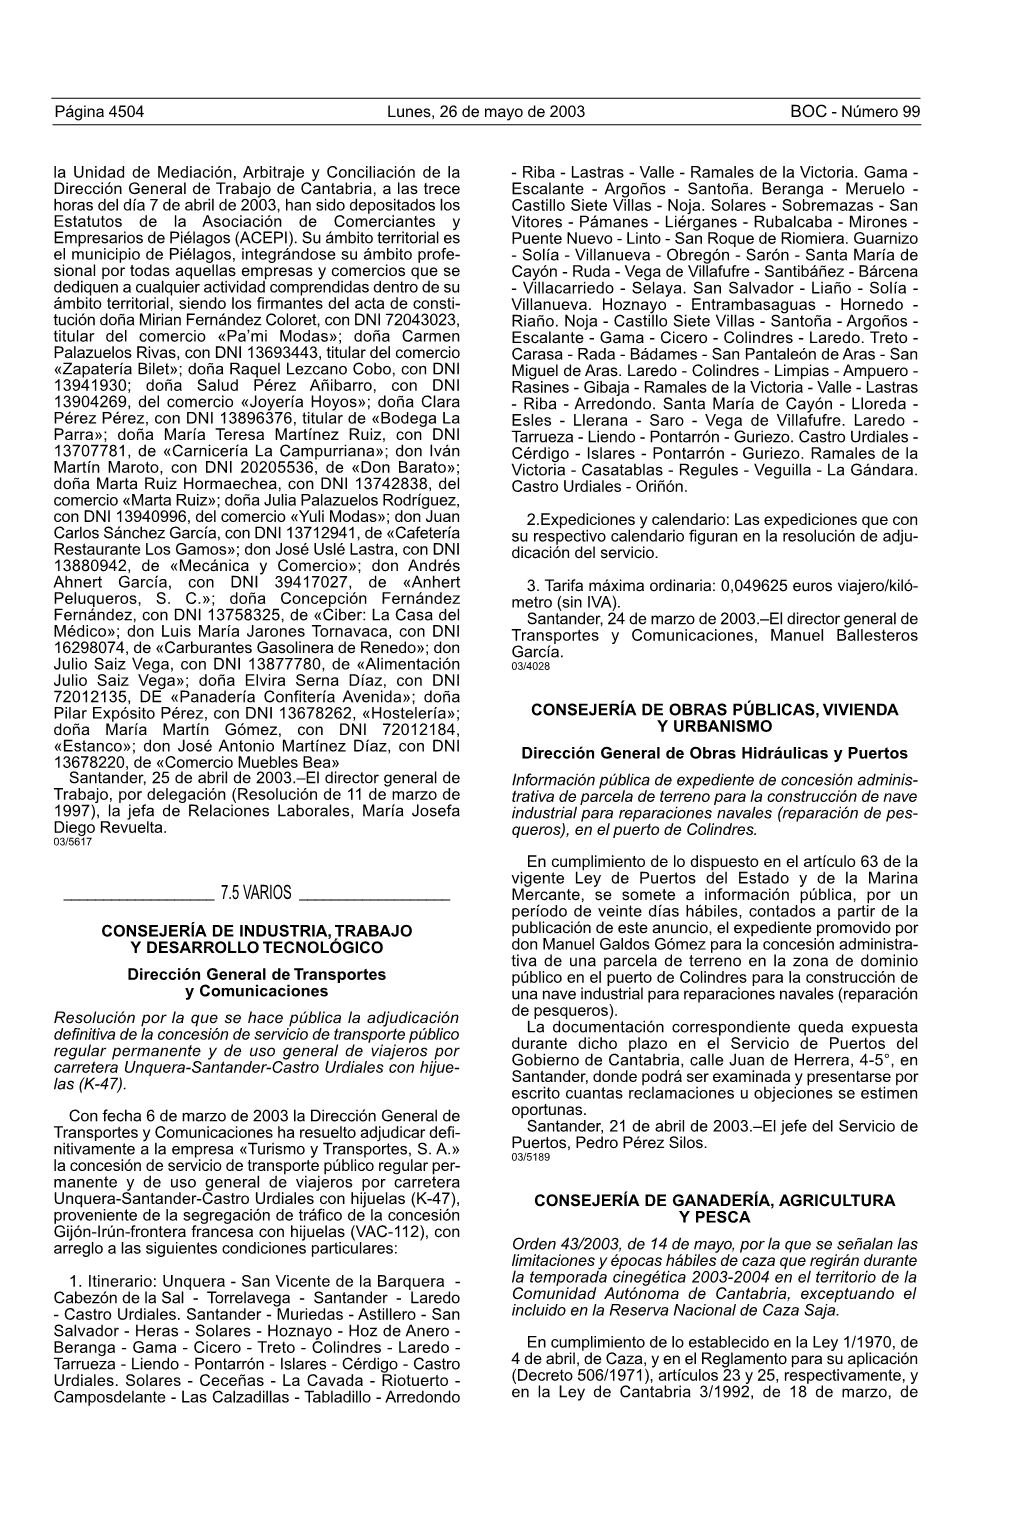 BOC - Número 99 La Unidad De Mediación, Arbitraje Y Conciliación De La - Riba - Lastras - Valle - Ramales De La Victoria